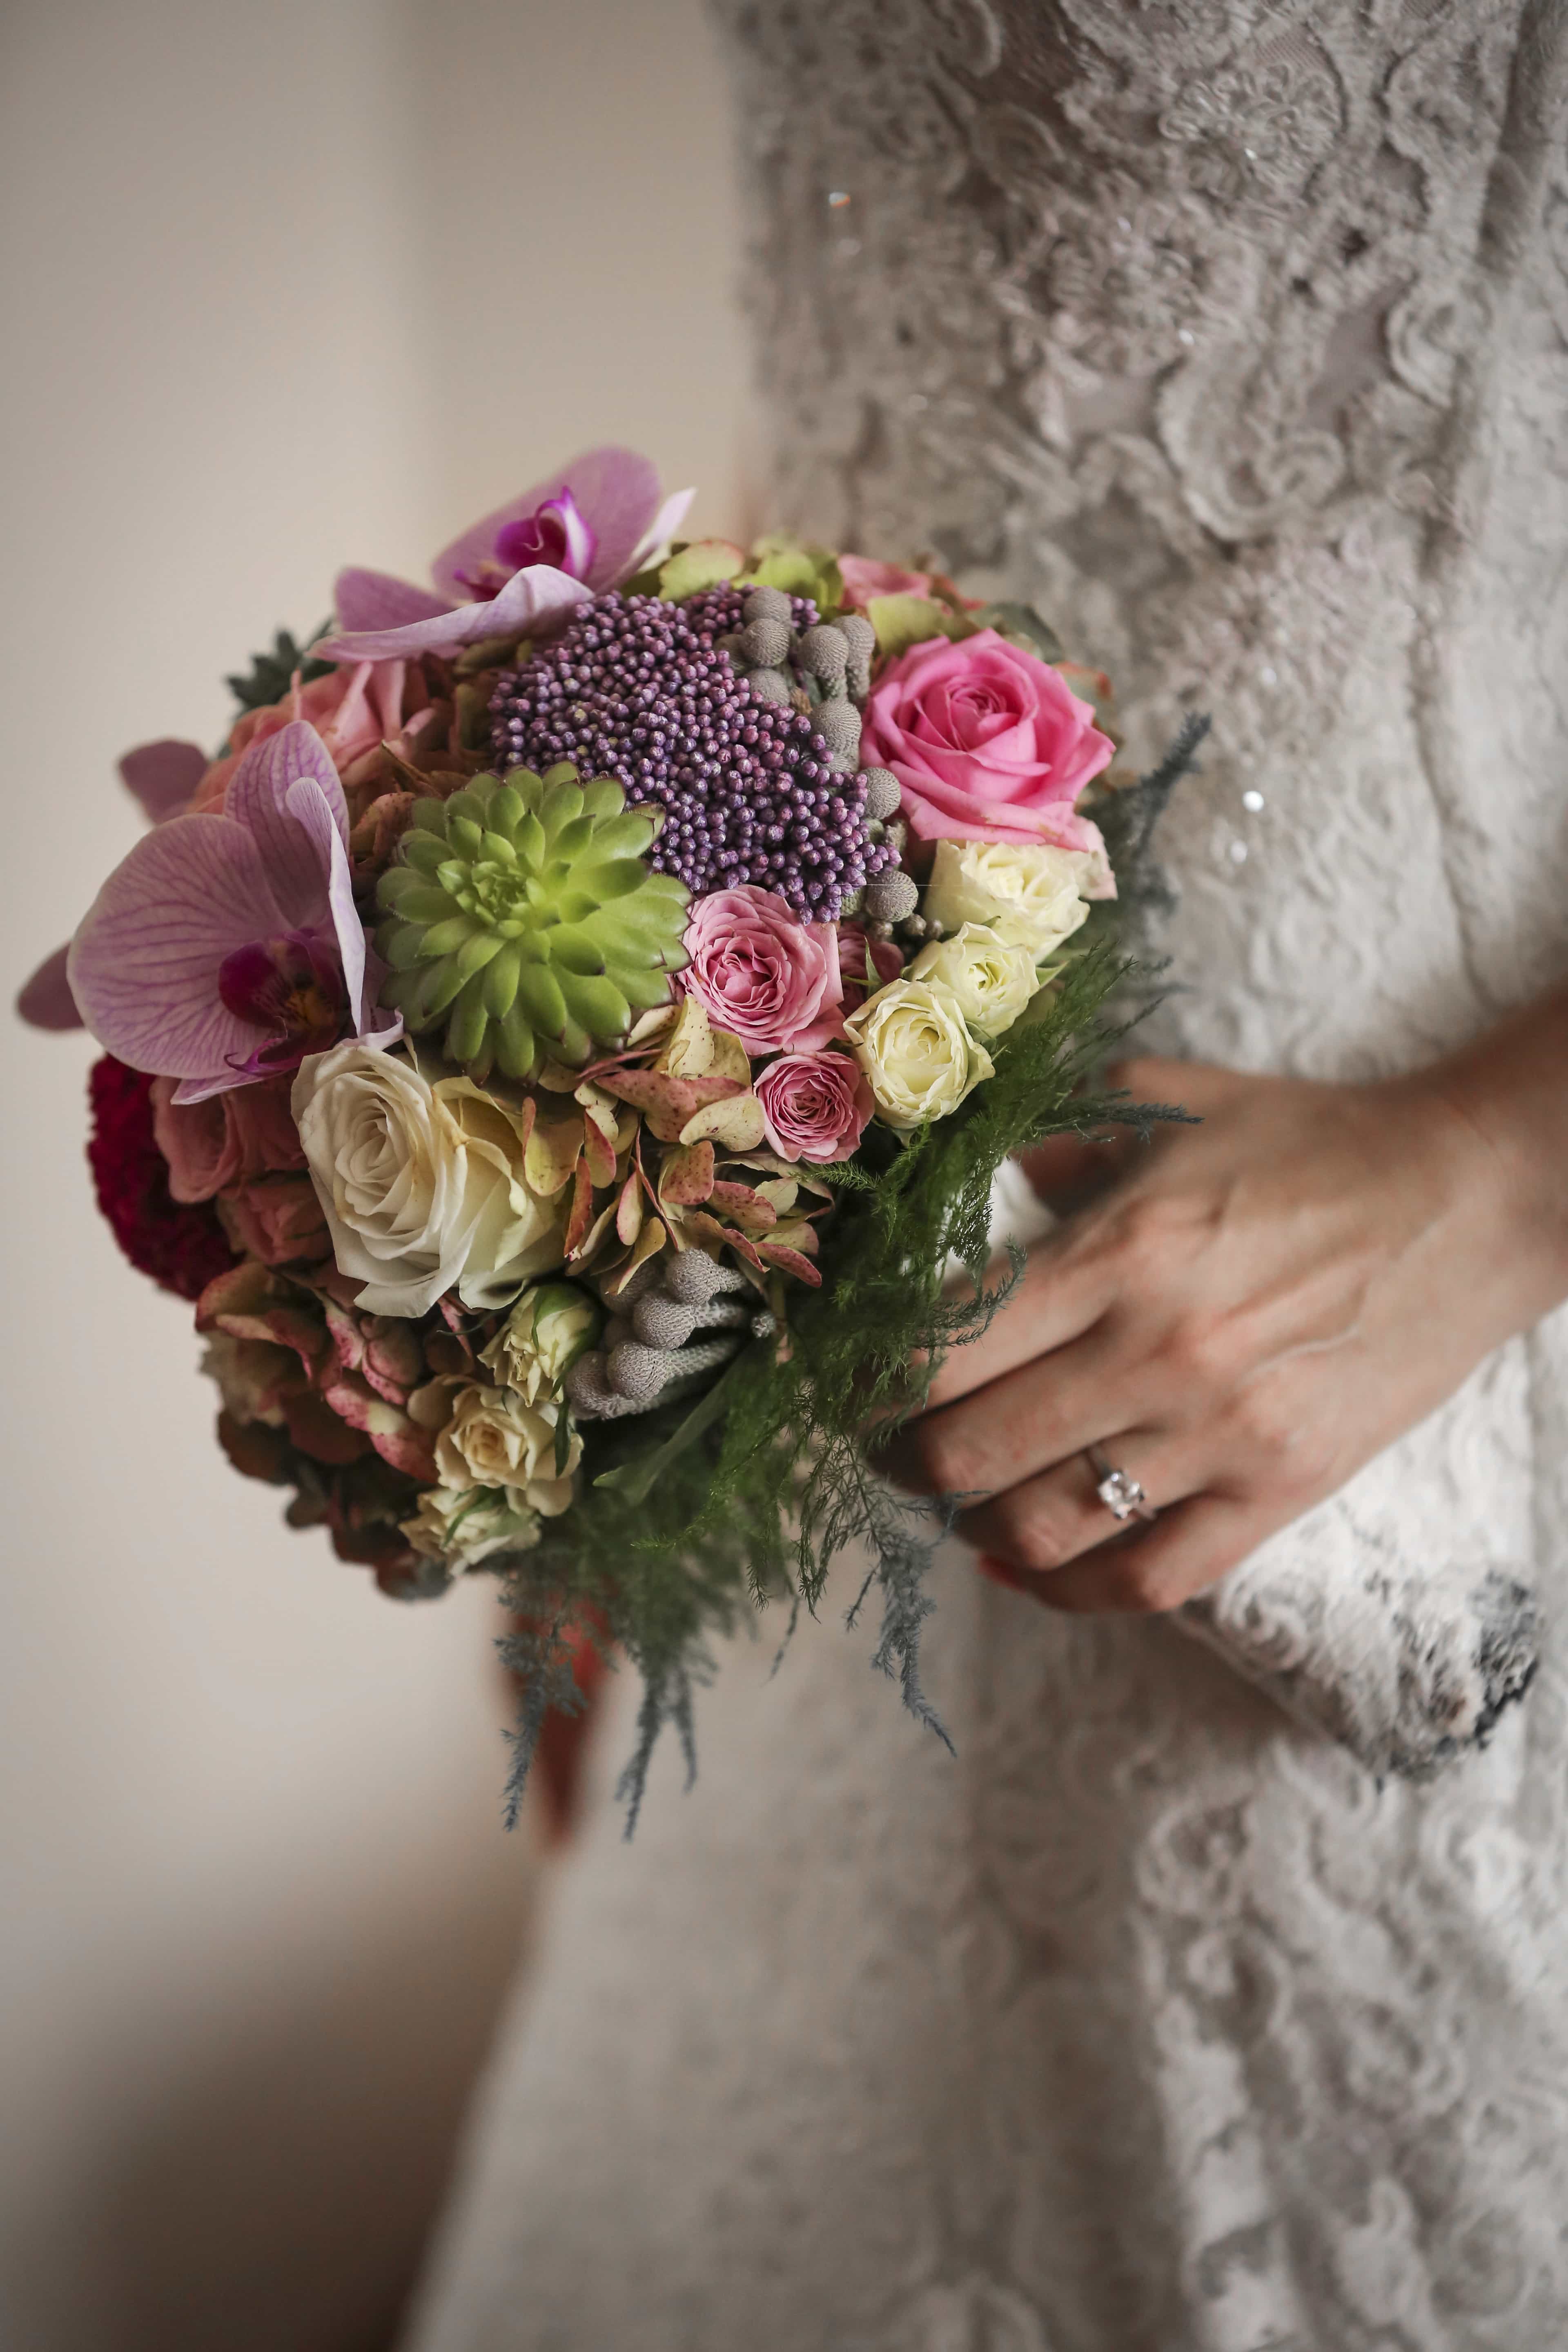 フリー写真画像 花束 装飾 ドレス エレガンス 手 結婚 結婚式 結婚指輪 妻 配置